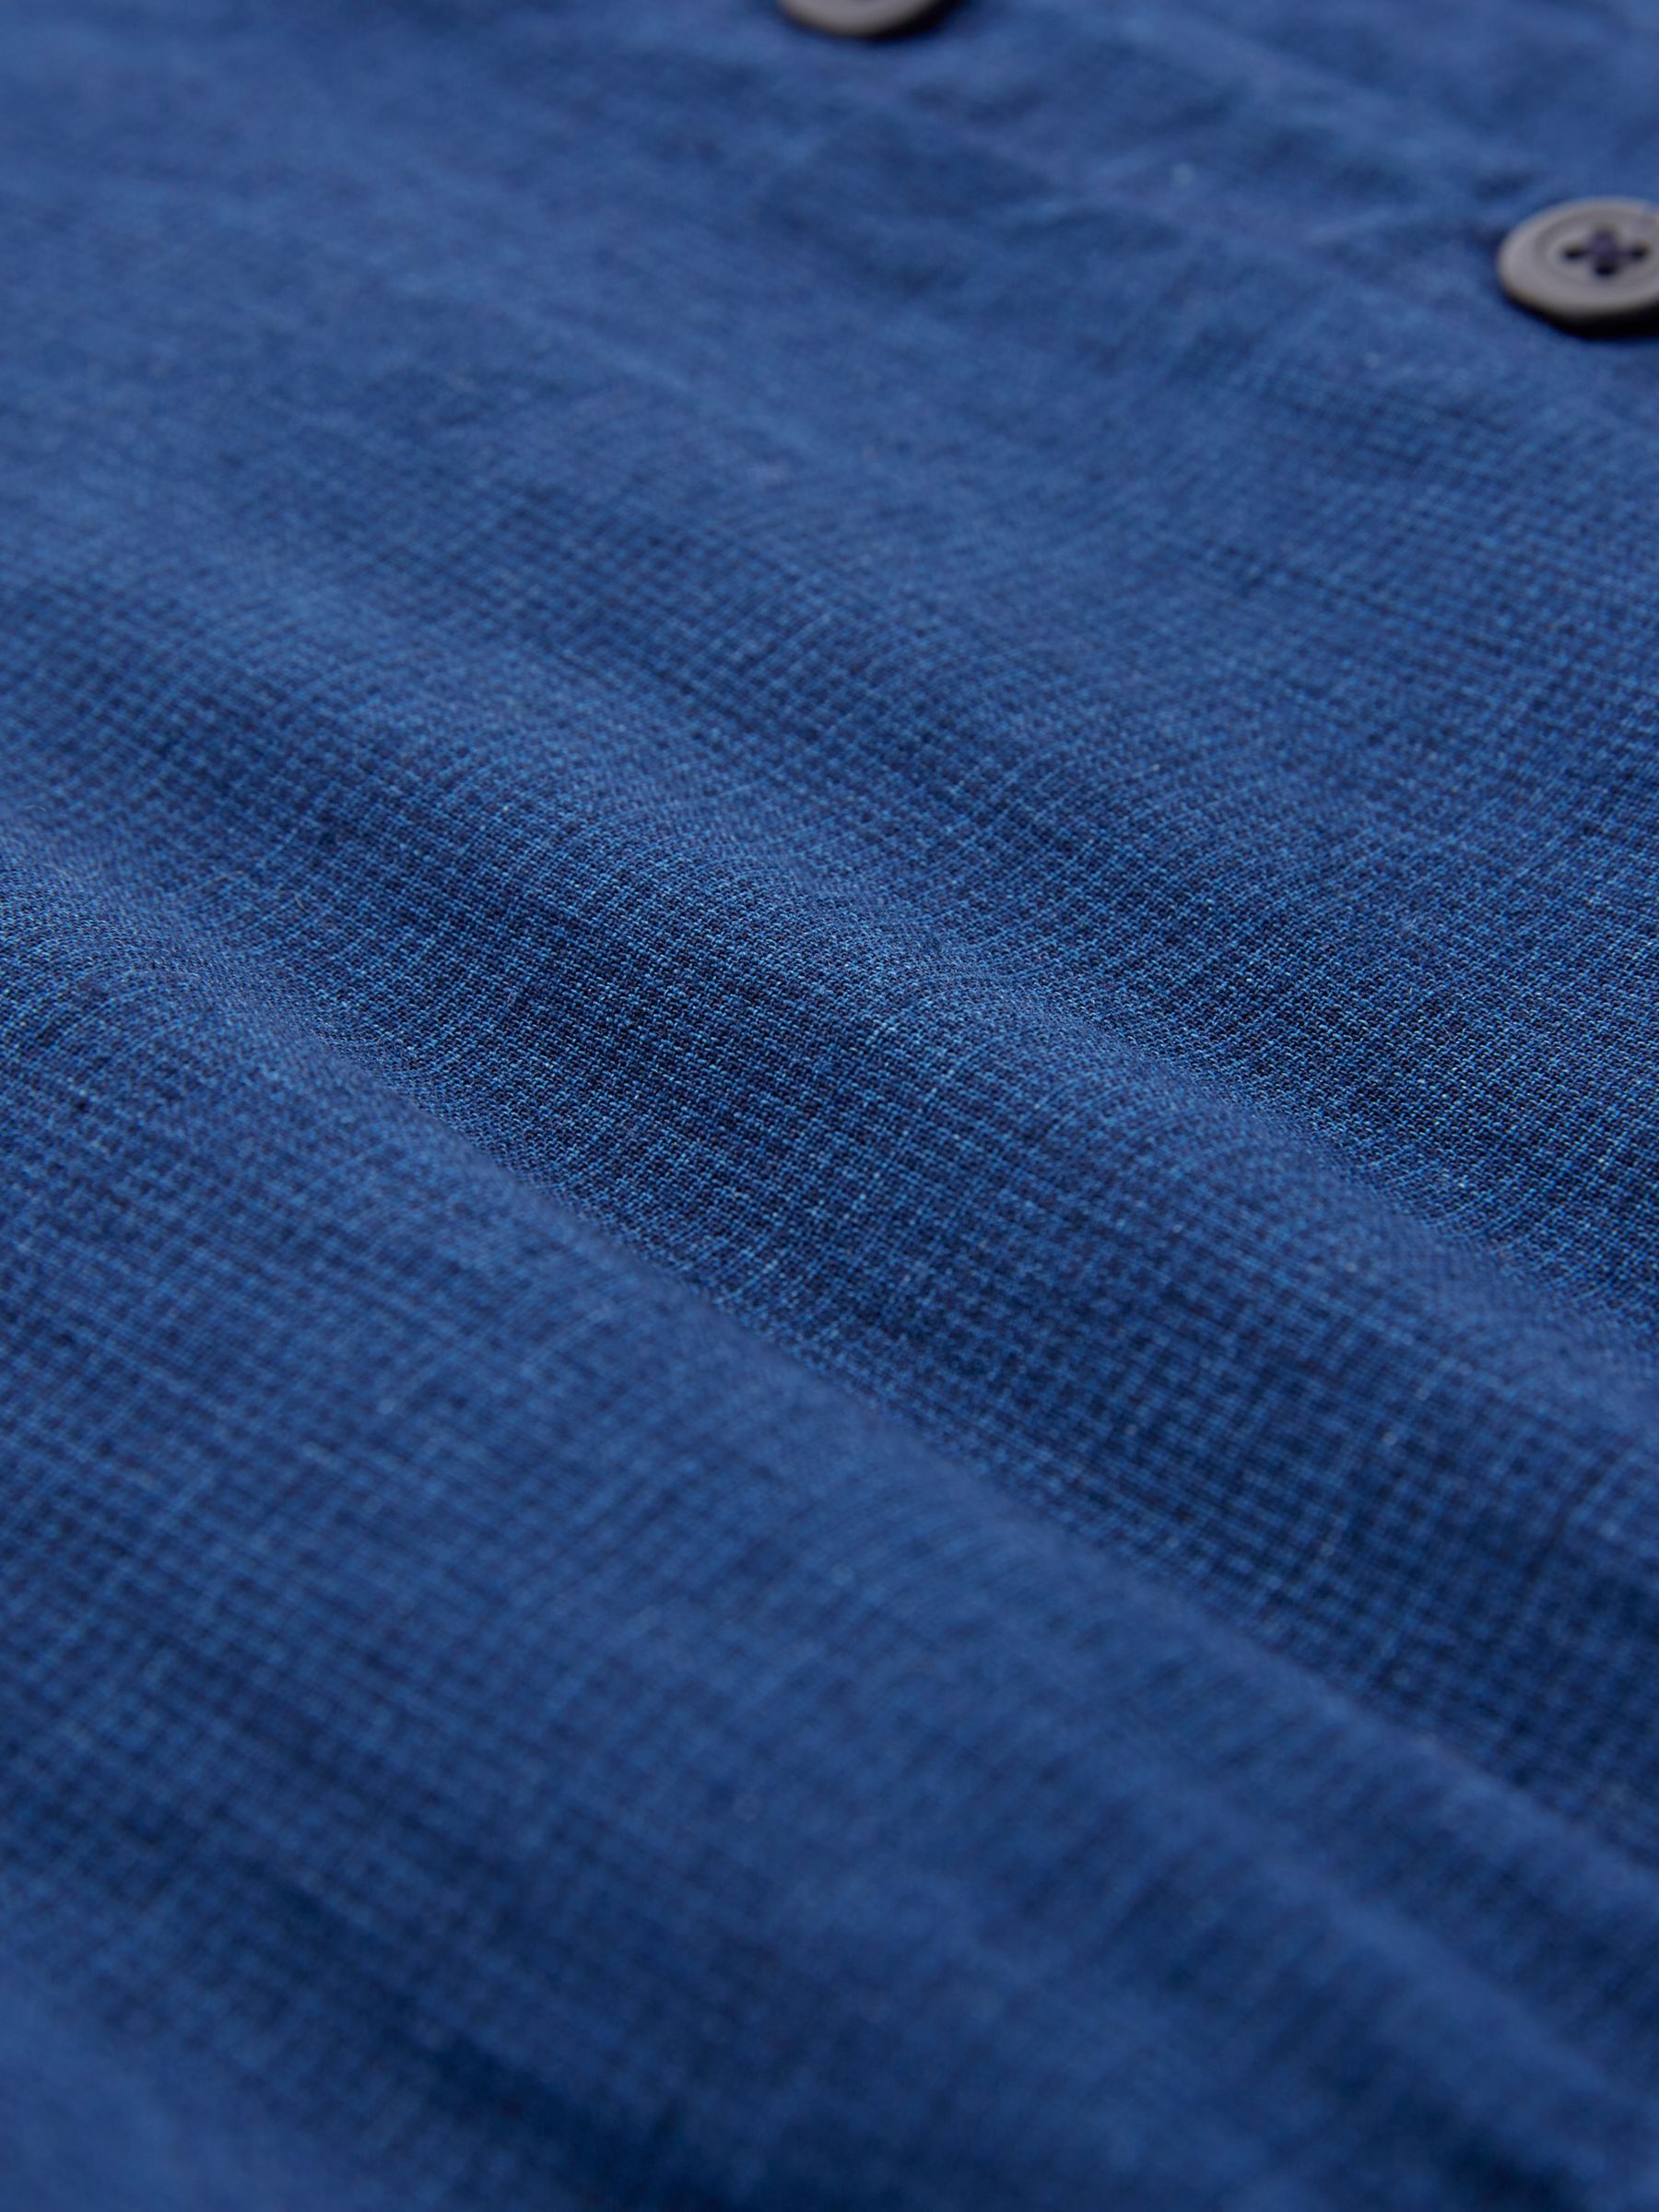 Celtic & Co. Plain Cotton-Linen Shirt Dress, Navy, 8